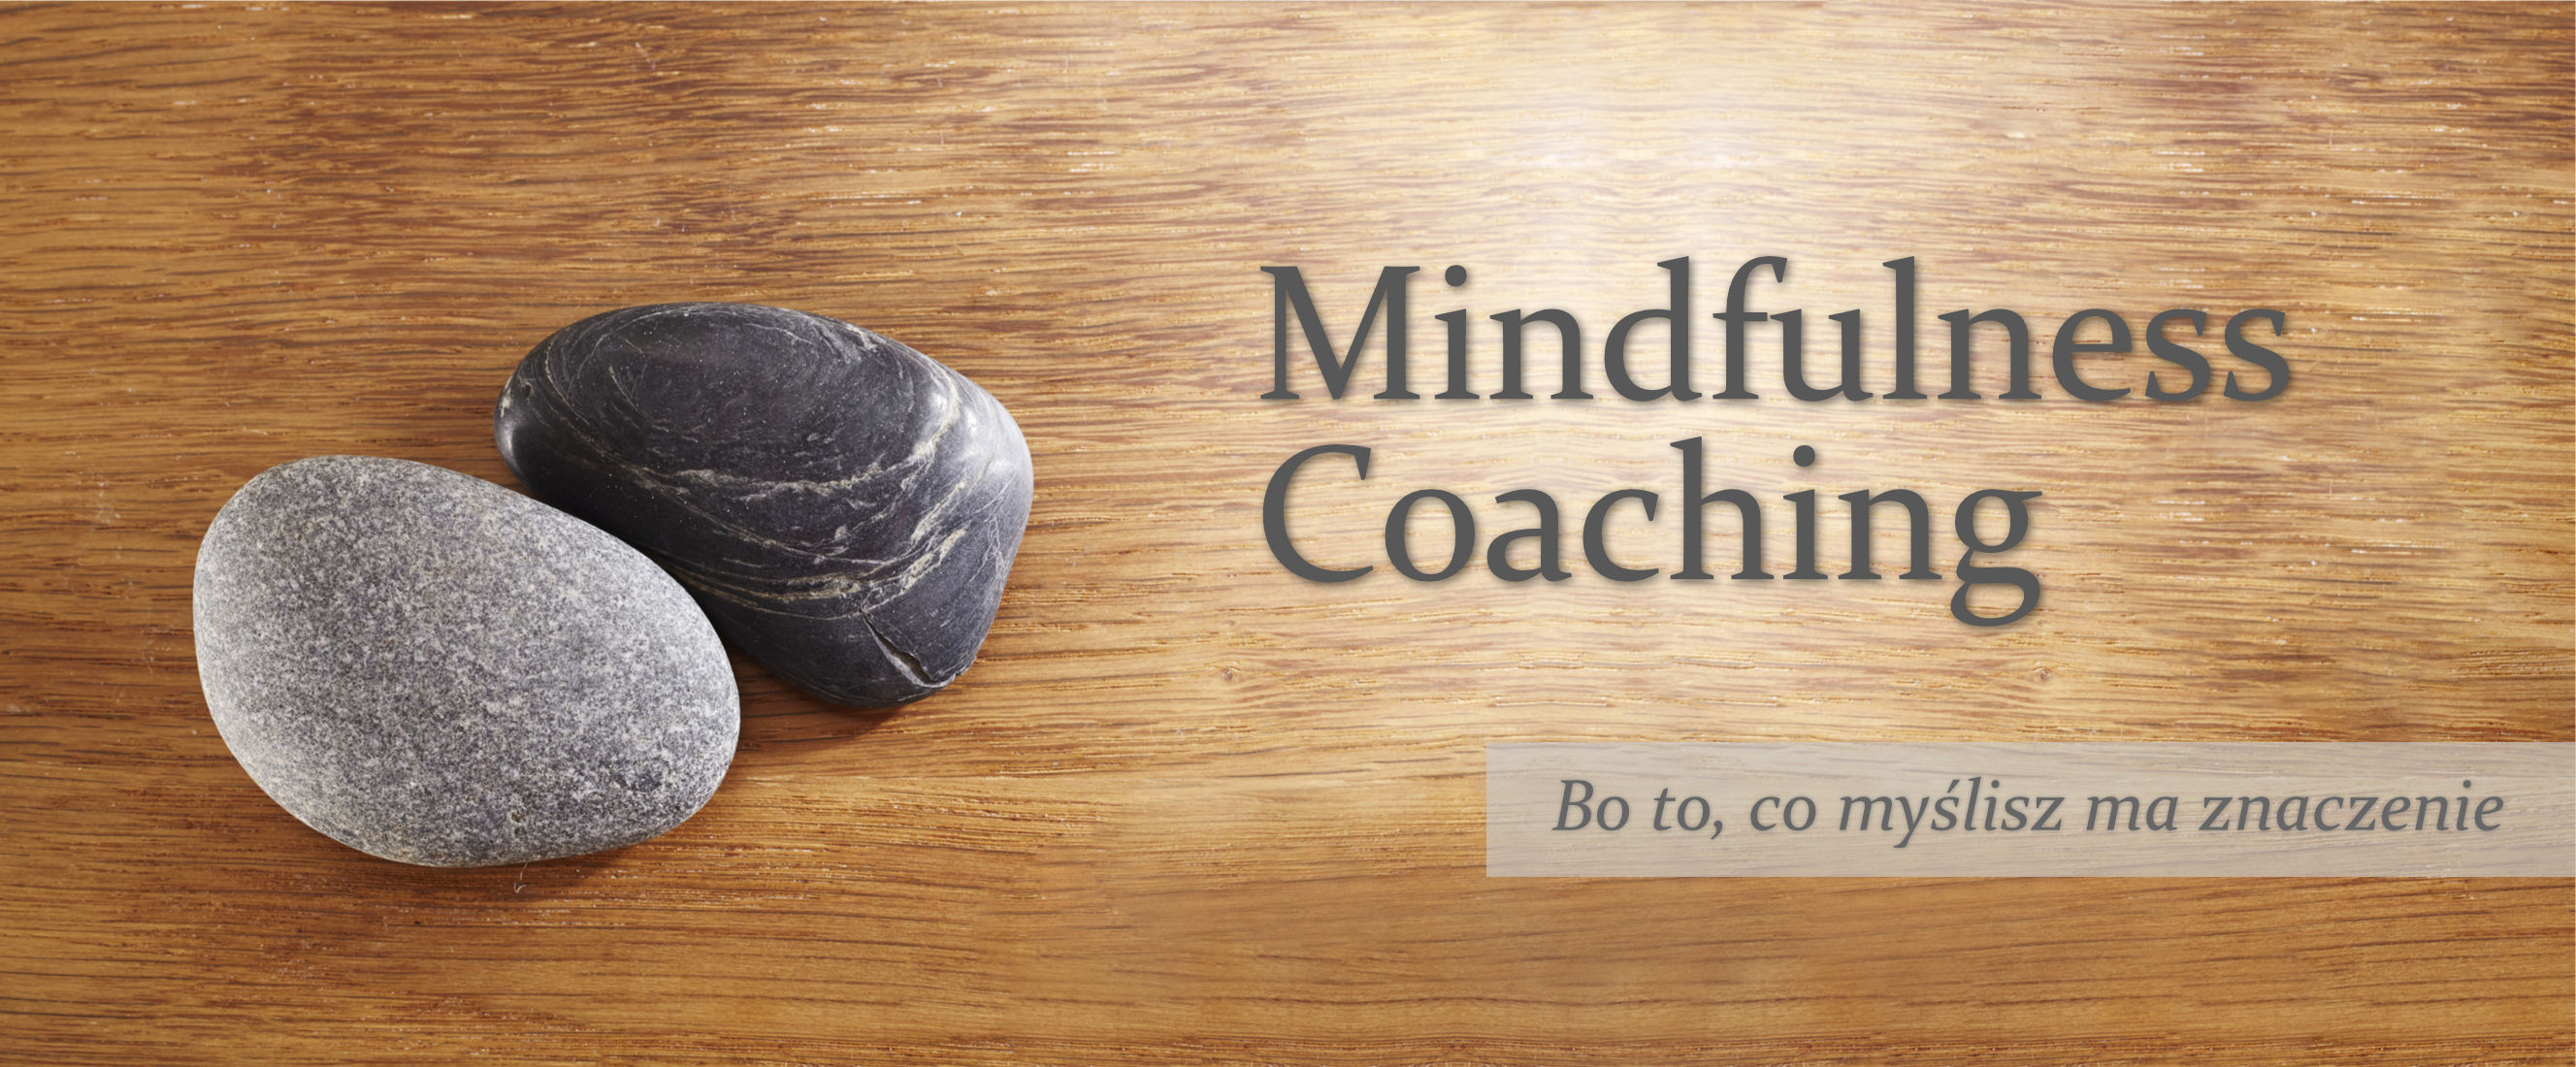 mindfulness%20coaching